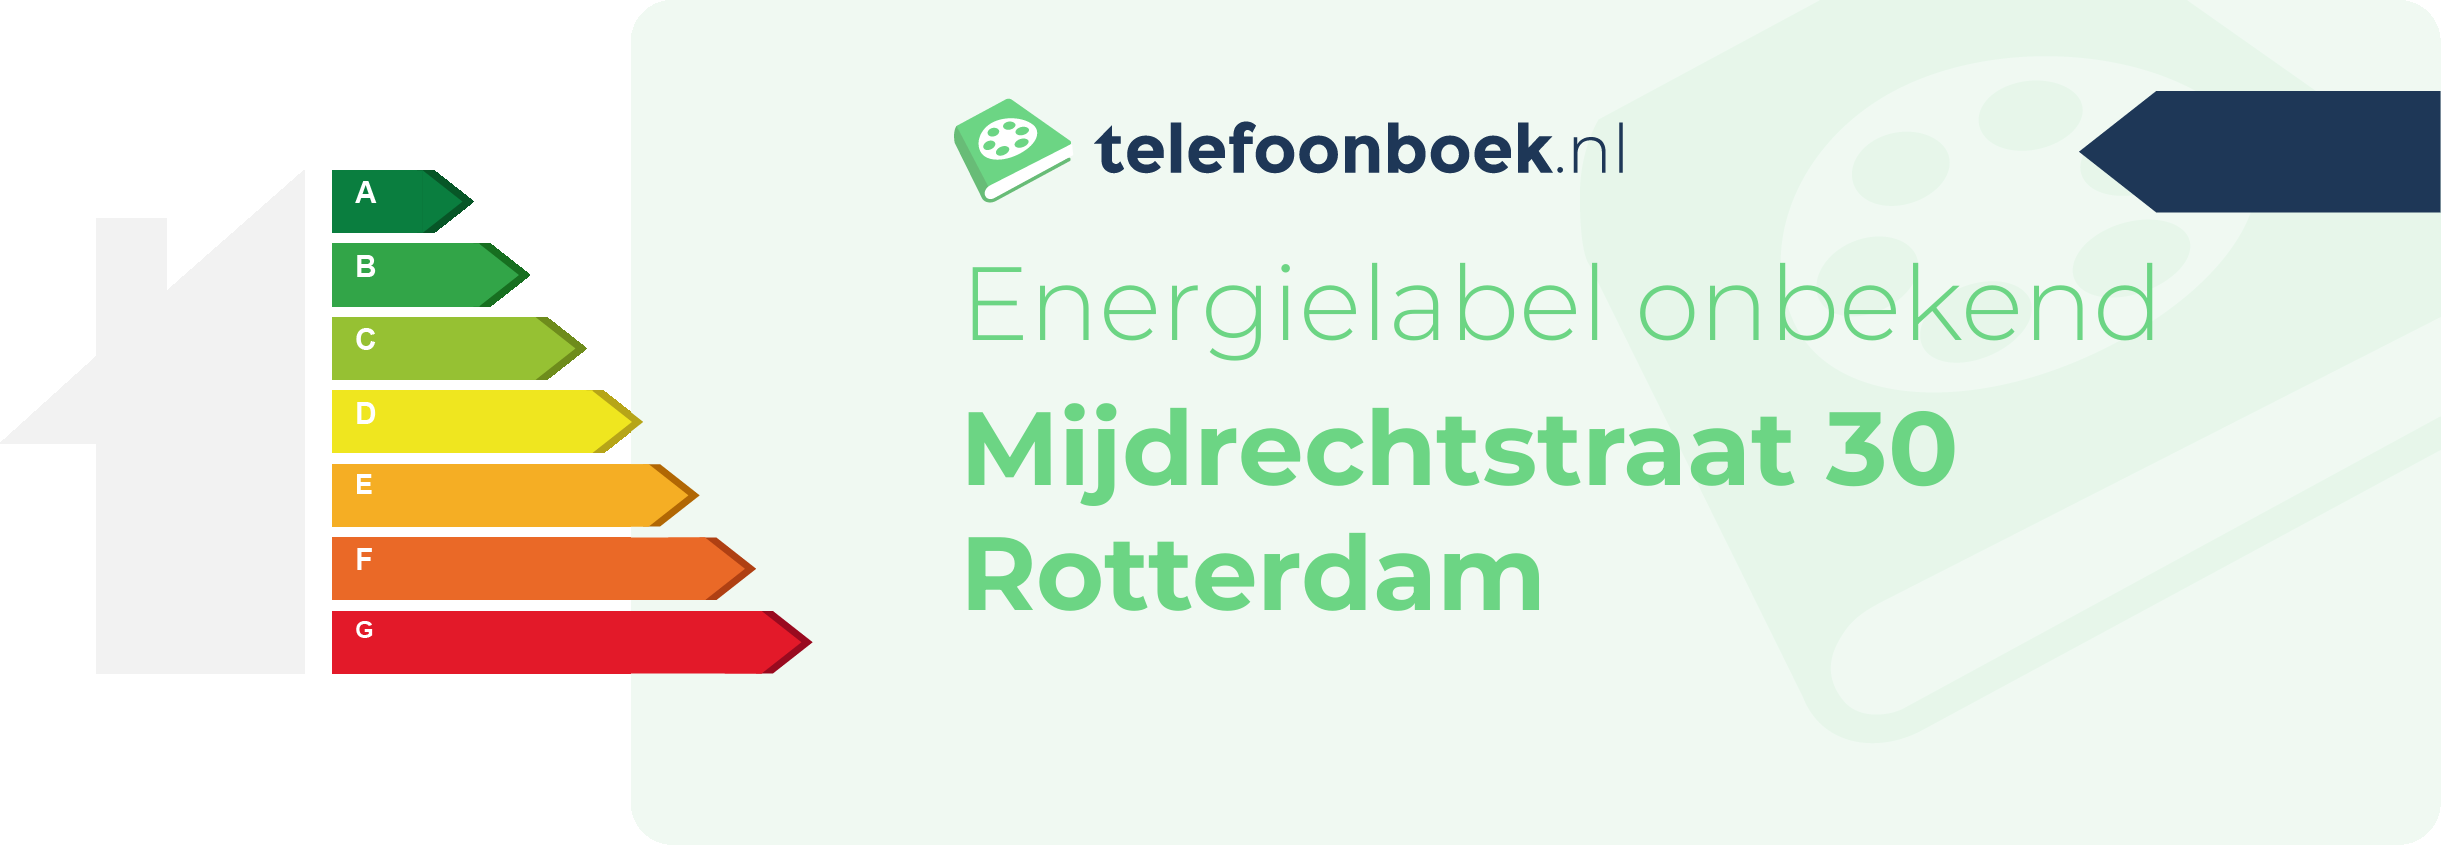 Energielabel Mijdrechtstraat 30 Rotterdam